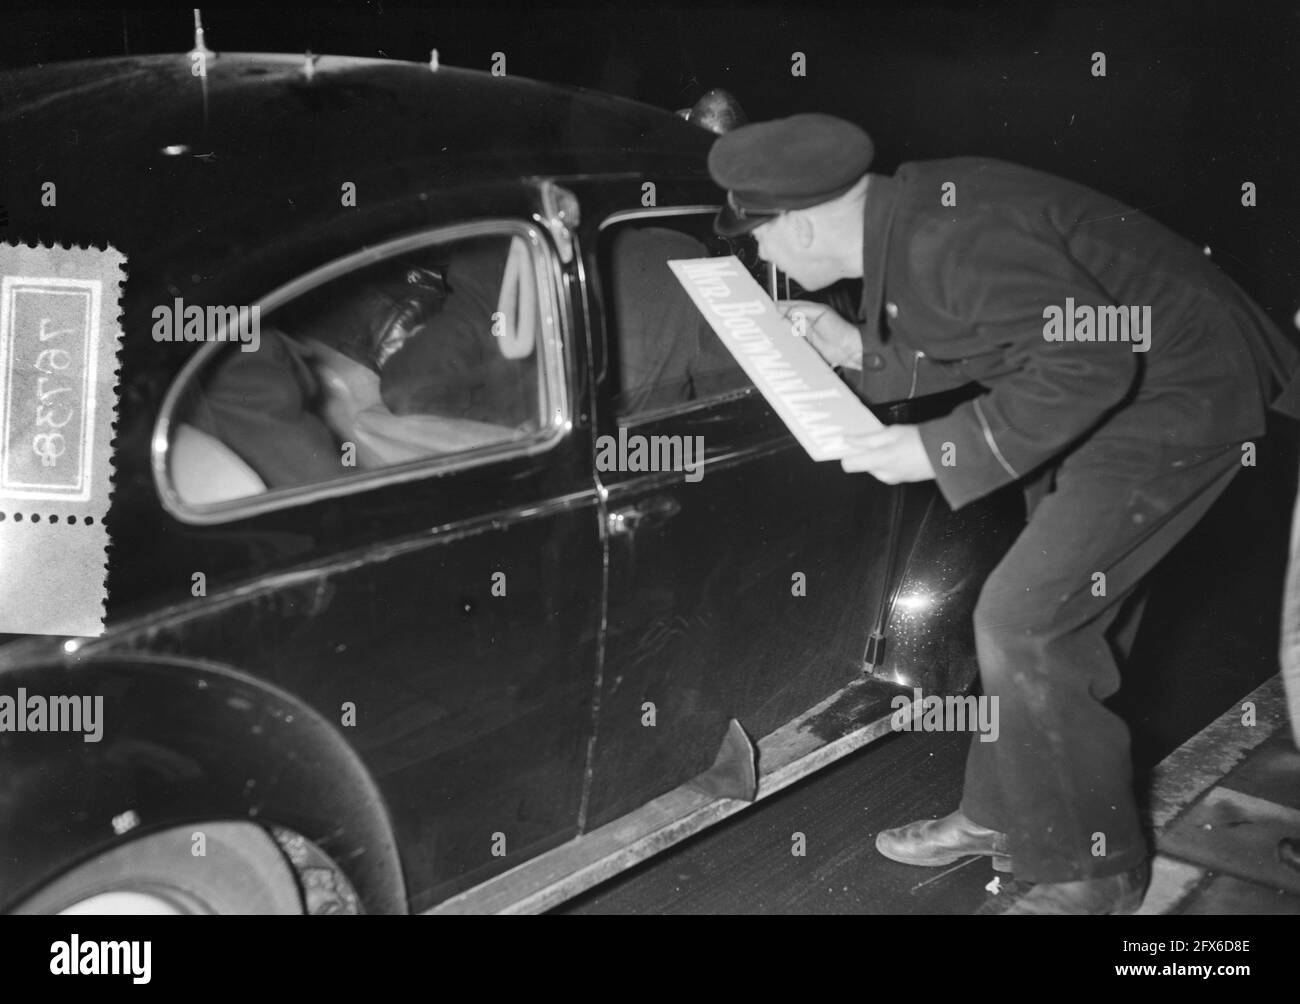 Polizei und Frau Schwarzweiß-Stockfotos und -bilder - Alamy